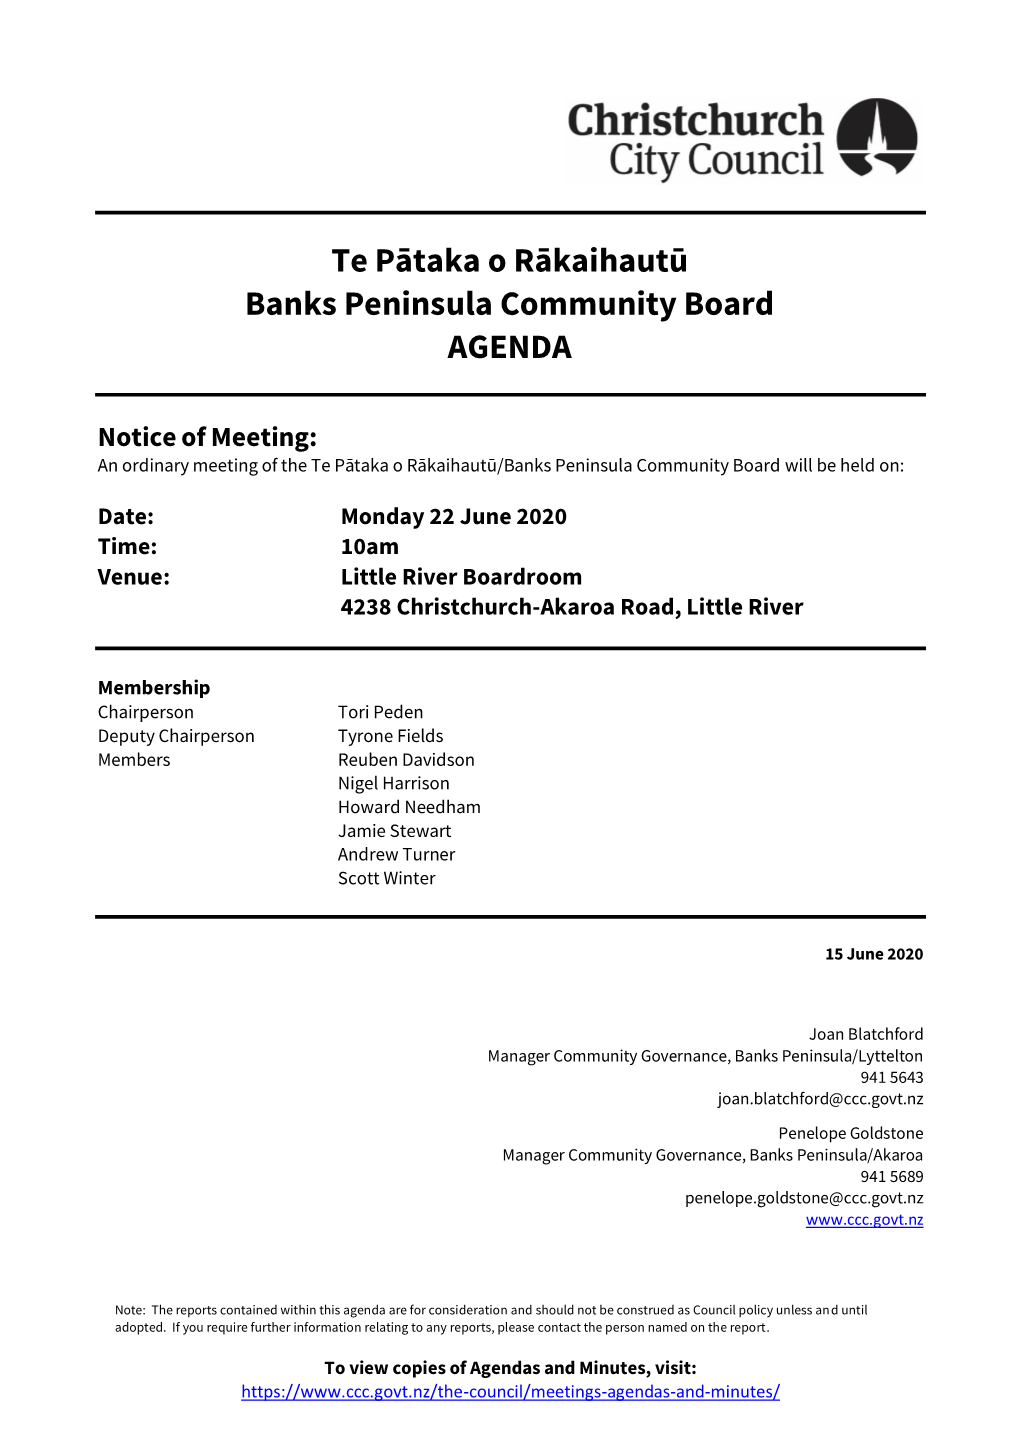 Agenda of Te Pātaka O Rākaihautū/Banks Peninsula